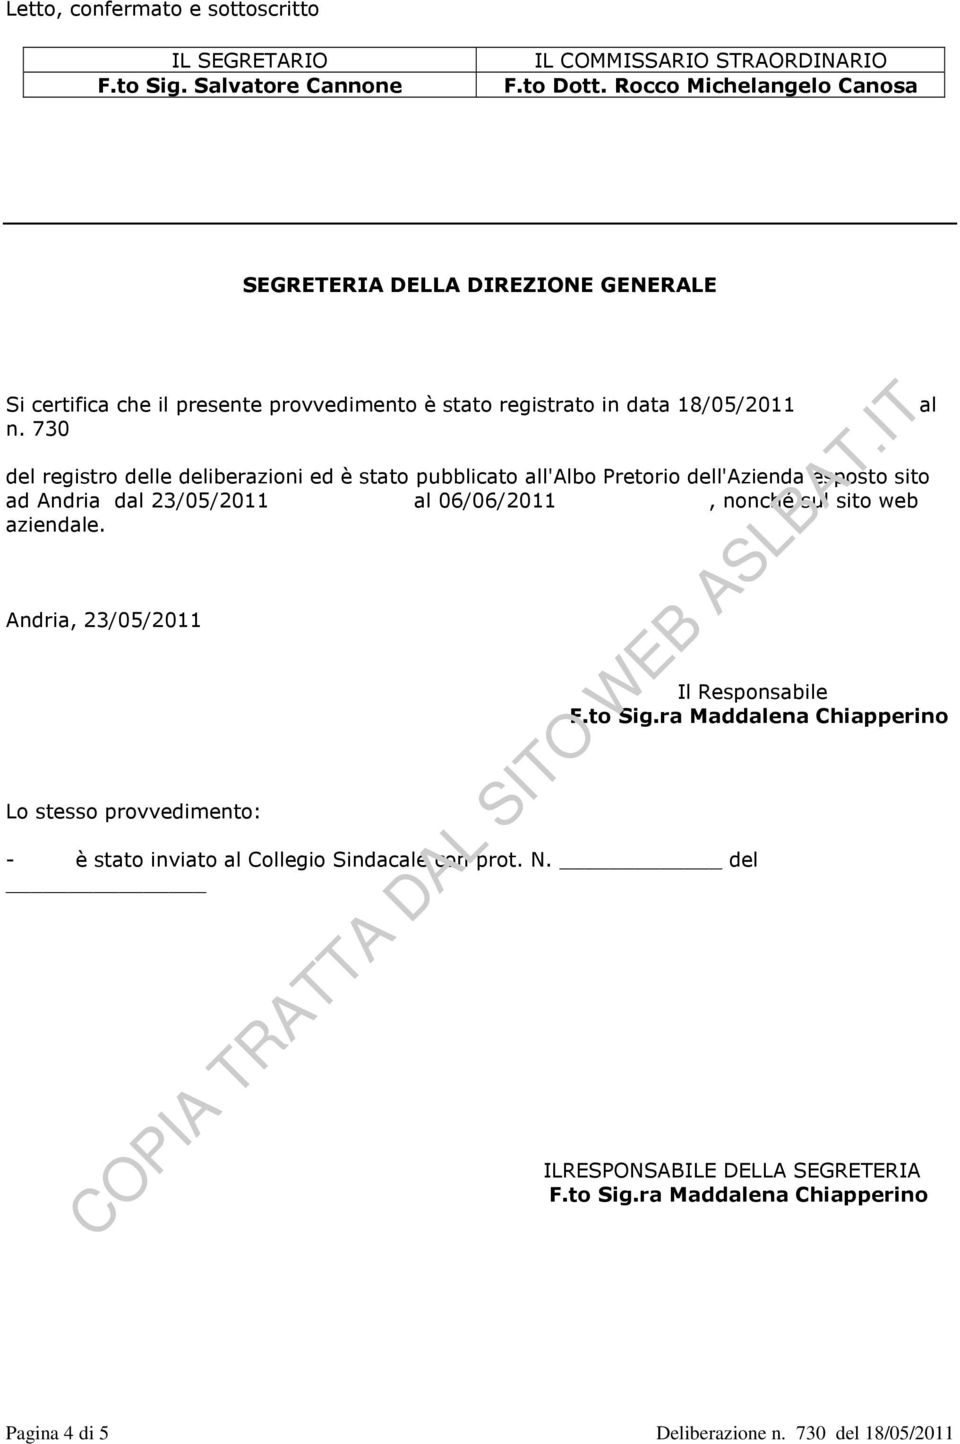 730 del registro delle deliberazioni ed è stato pubblicato all'albo Pretorio dell'azienda esposto sito ad Andria dal 23/05/2011 al 06/06/2011, nonché sul sito web aziendale.